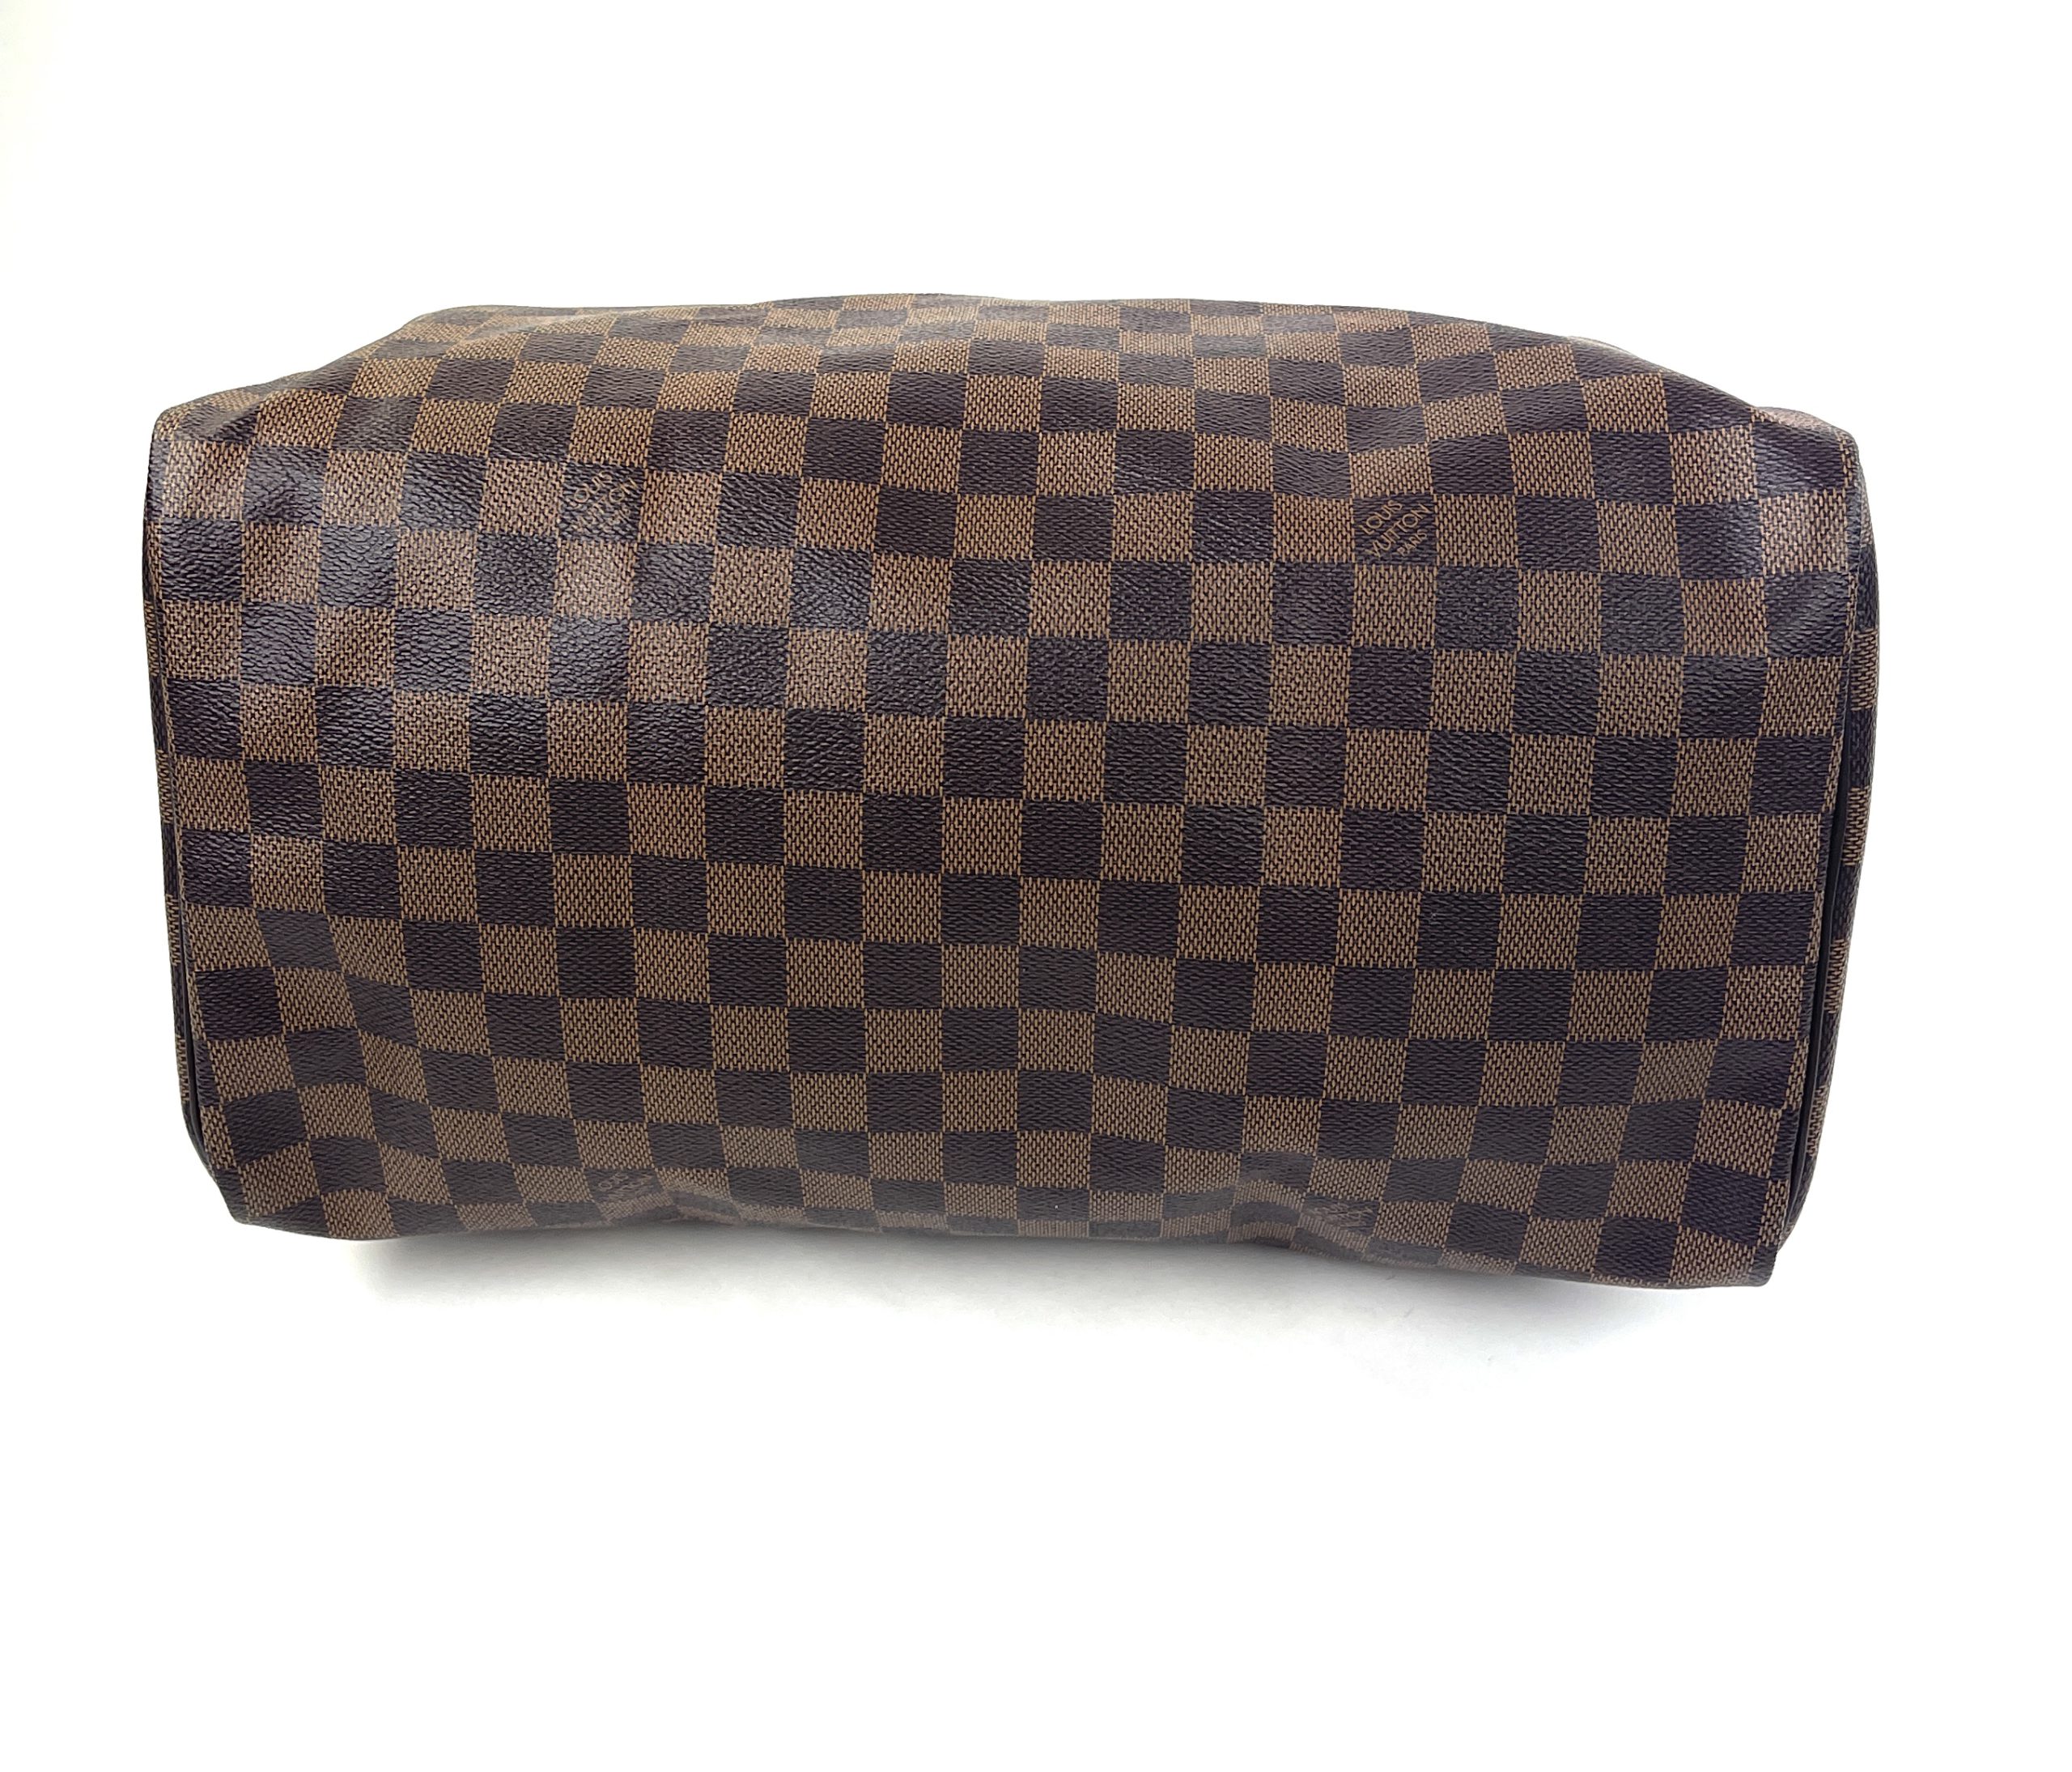 Louis Vuitton Speedy Bandouliere Bag Damier 35 - ShopStyle